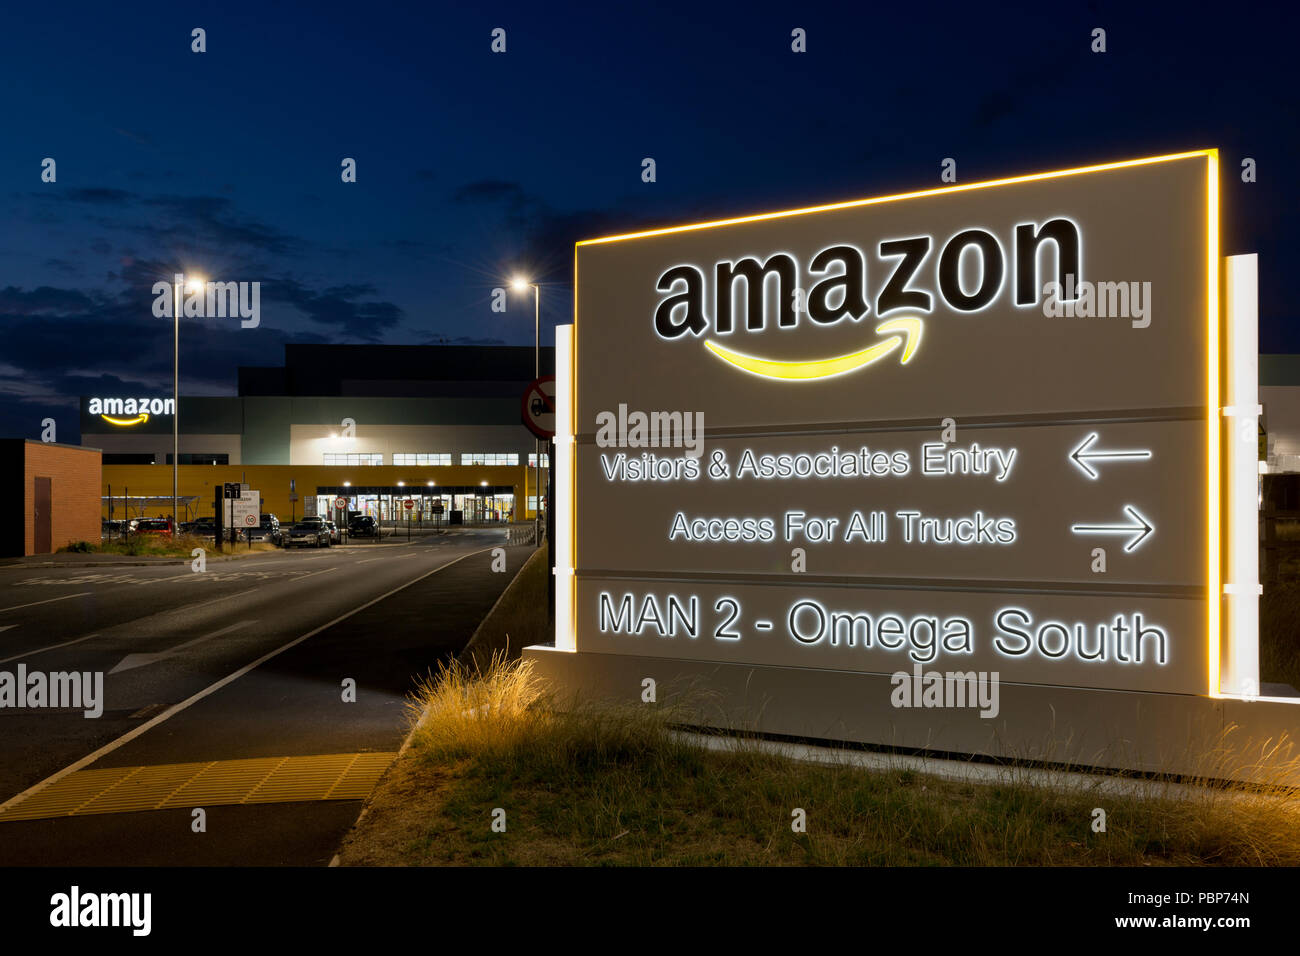 Amazon Fulfillment Immagini e Fotos Stock - Alamy